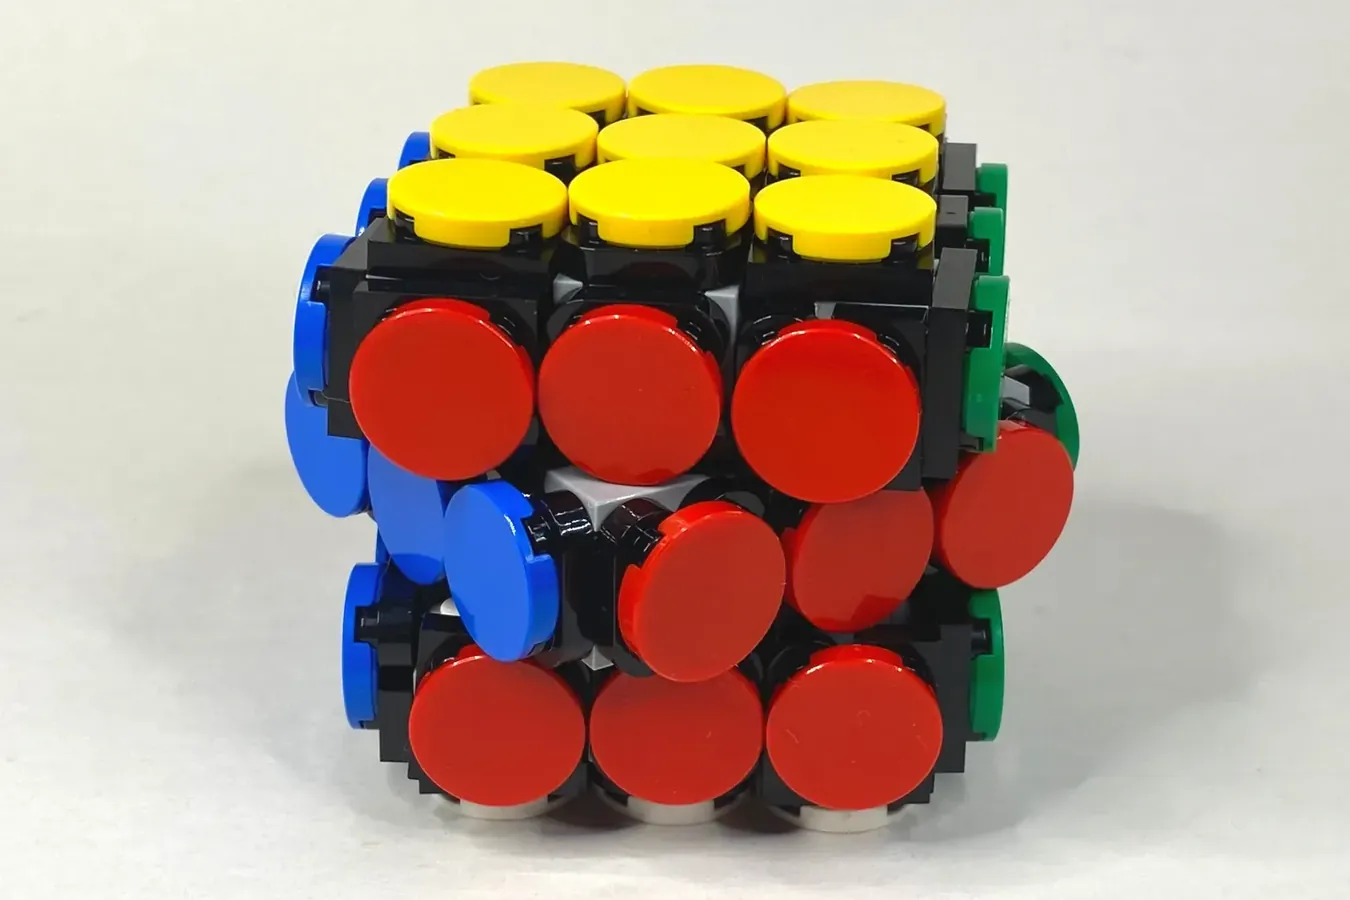 レゴ R アイデアで 動くルービックキューブ が製品化レビュー進出 21年第3回1万サポート獲得デザイン紹介 スタッズ レゴ R Lego R 総合ファンニュースメディア